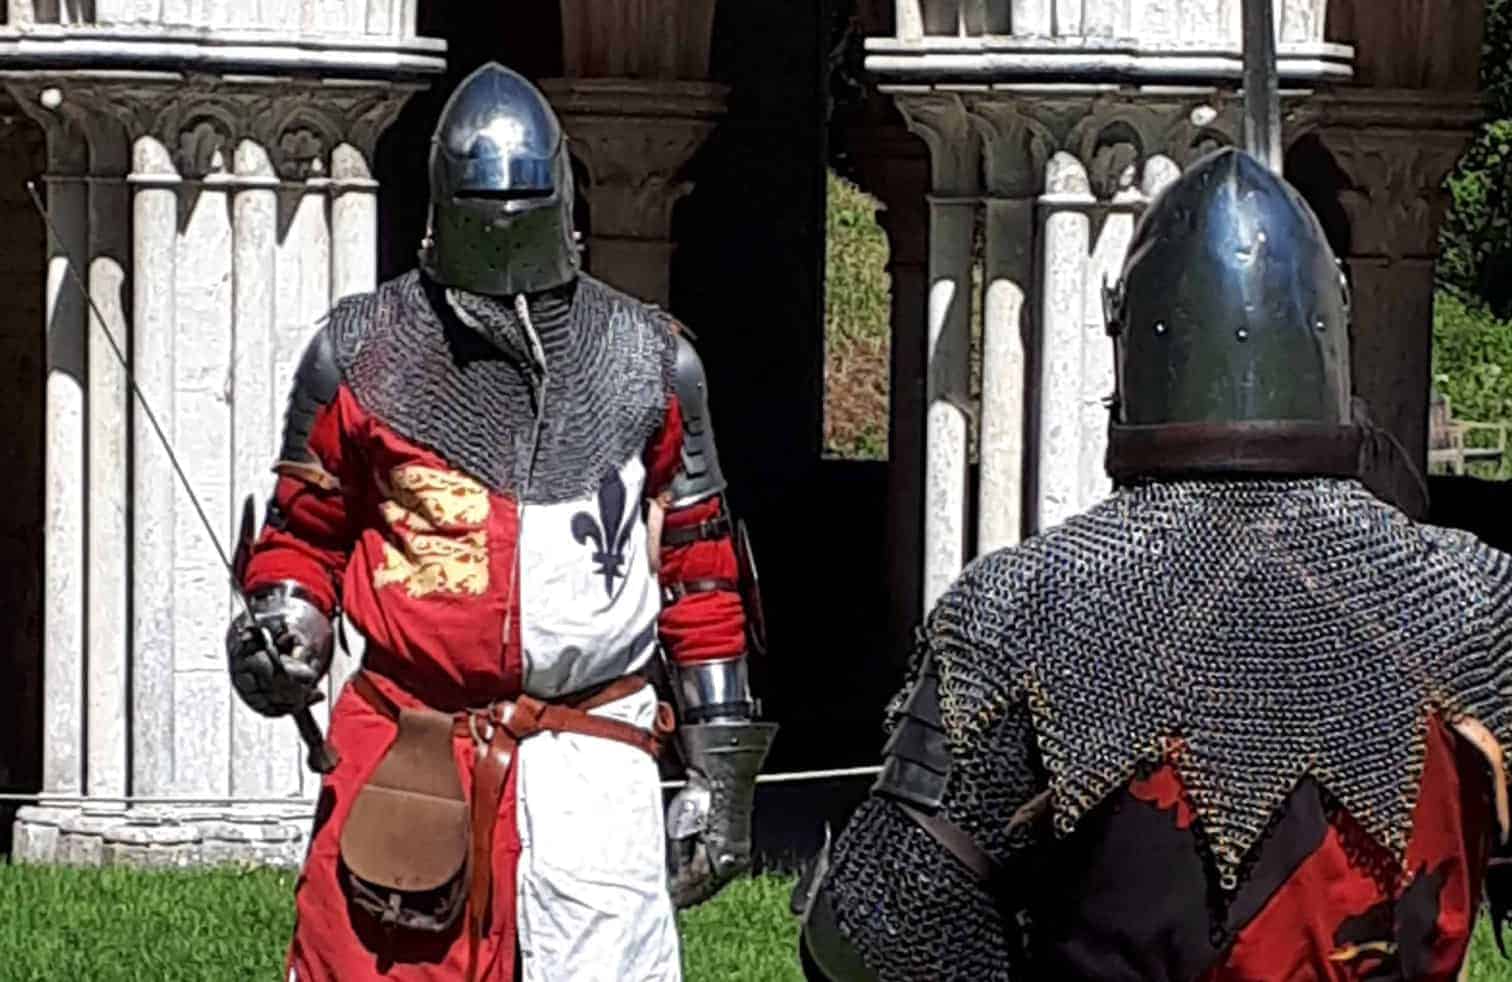 Deux individus en armure de chevalier médiéval se préparant pour une démonstration ou une reconstitution.